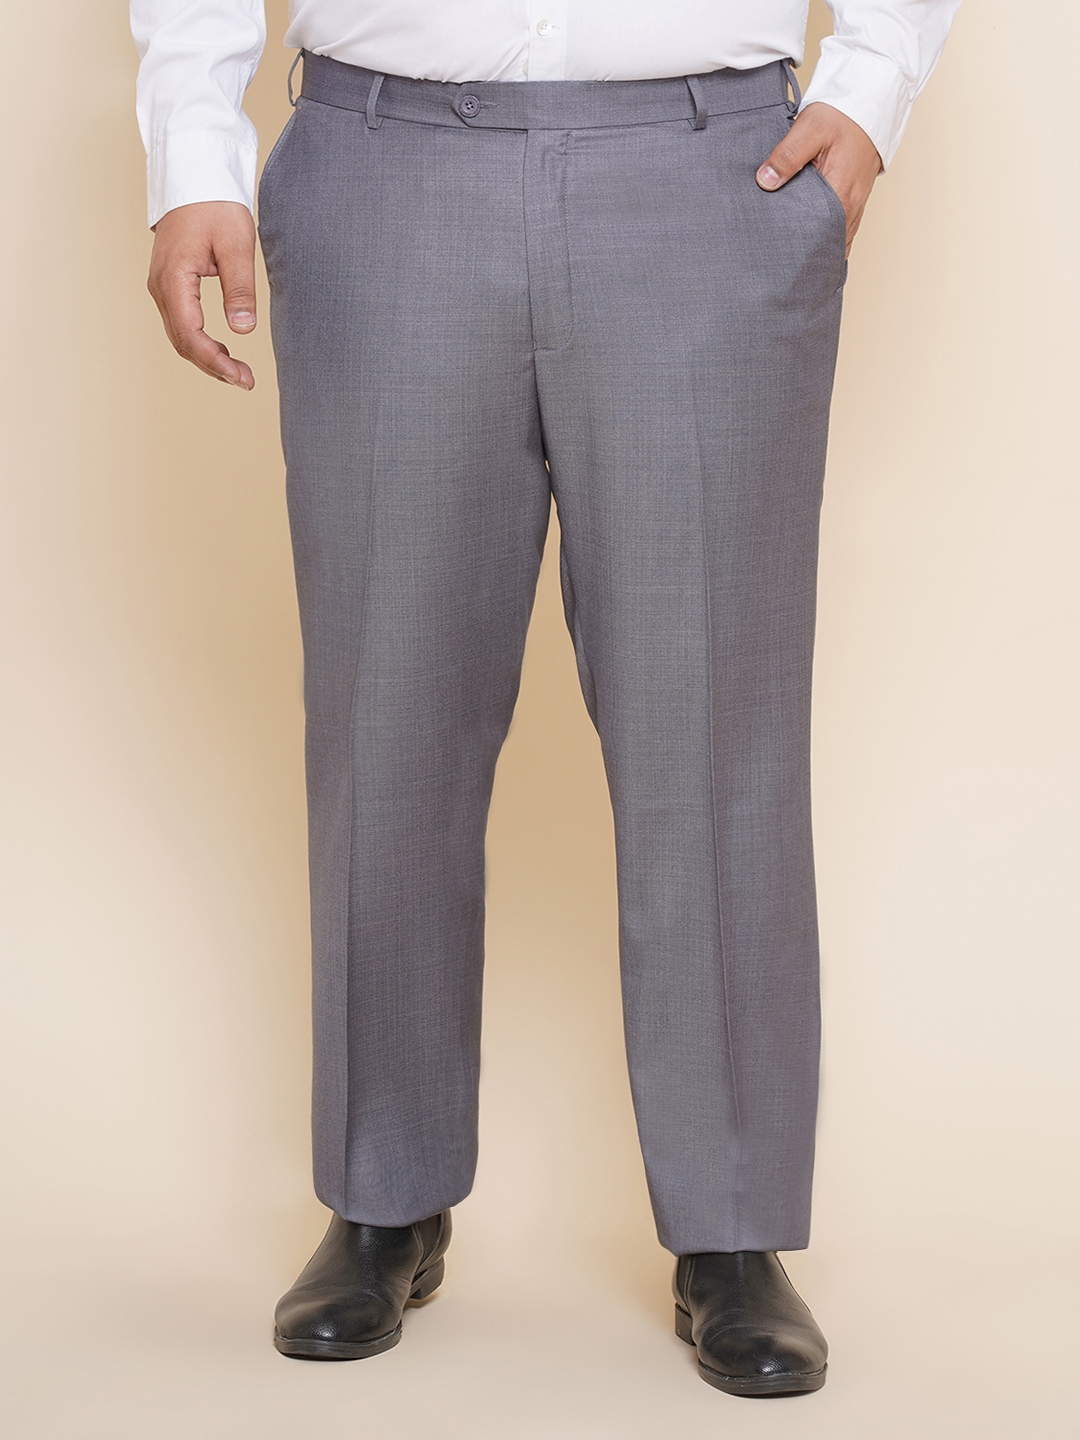 bottomwear/trousers/JPTR22010I/jptr22010i-1.jpg